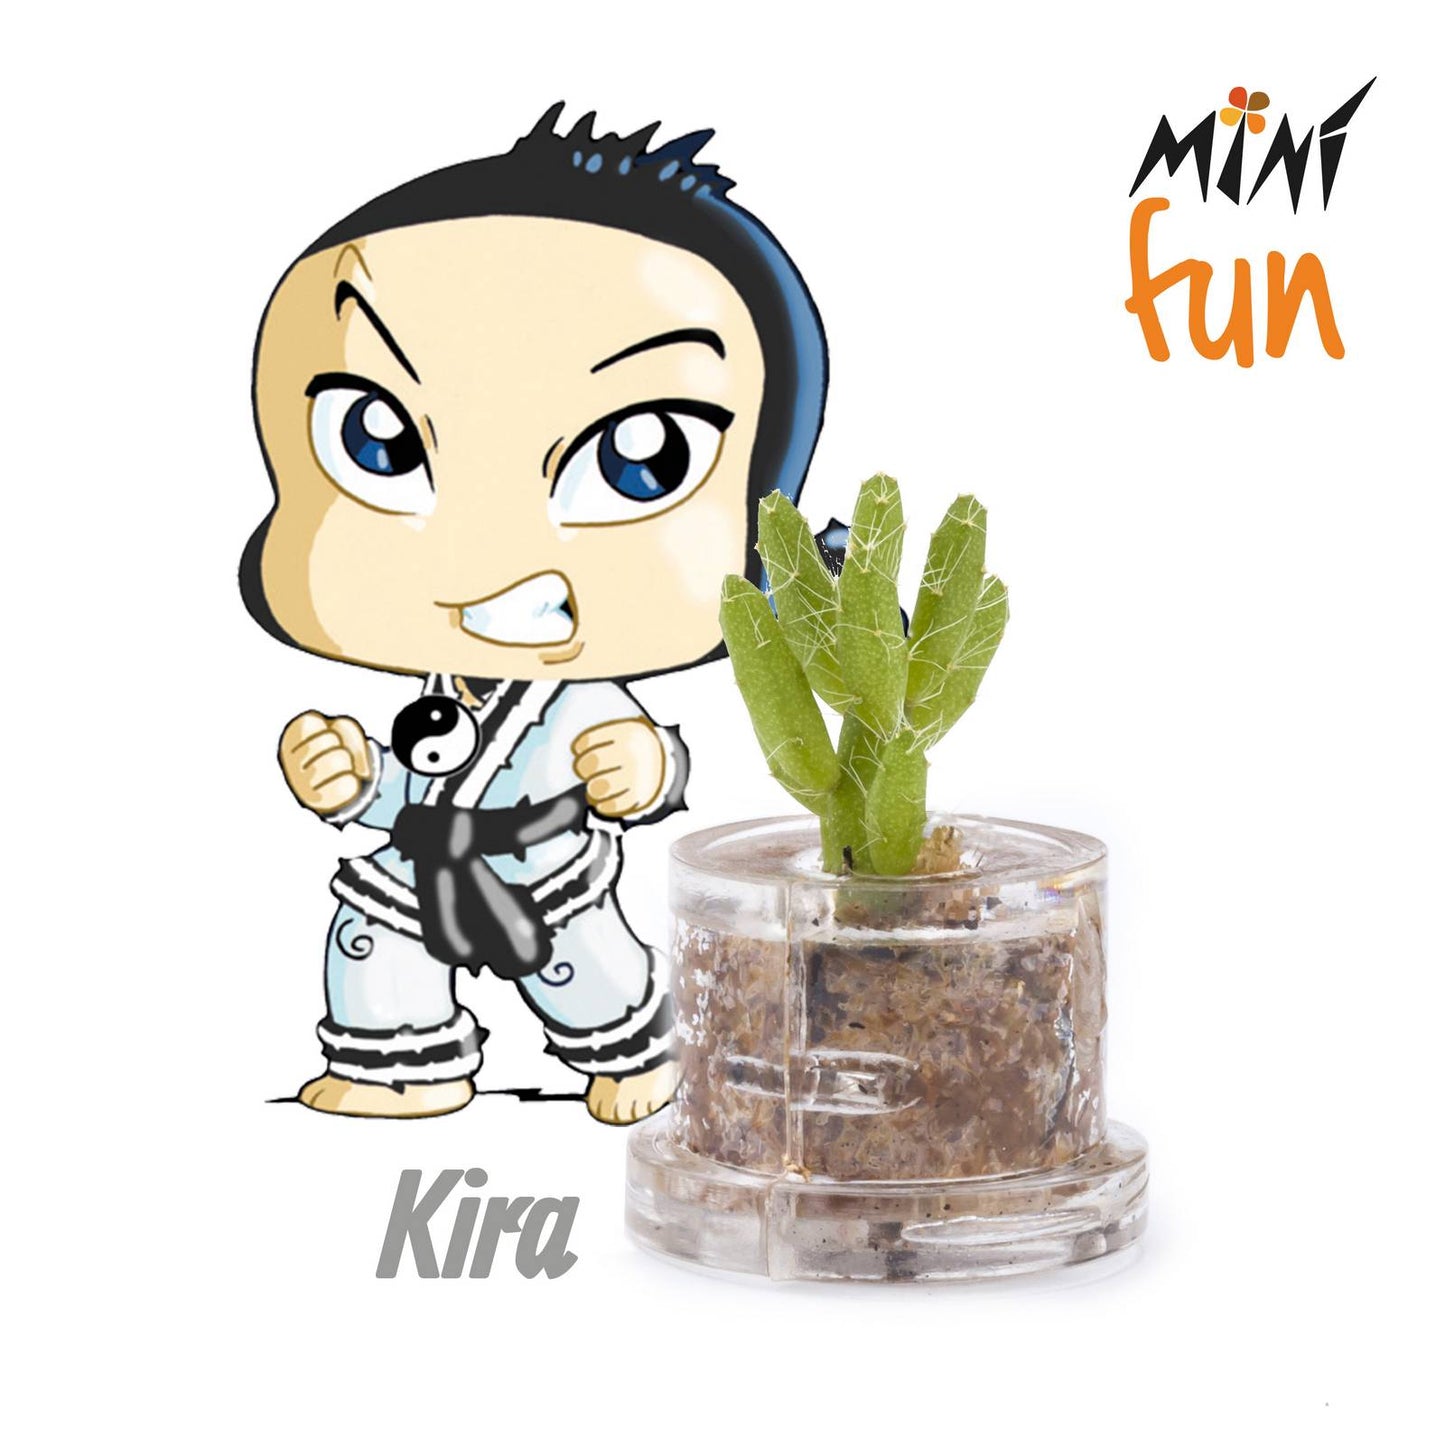 Minì Fun Kira - Mini pianta per i coraggiosi e i tenaci